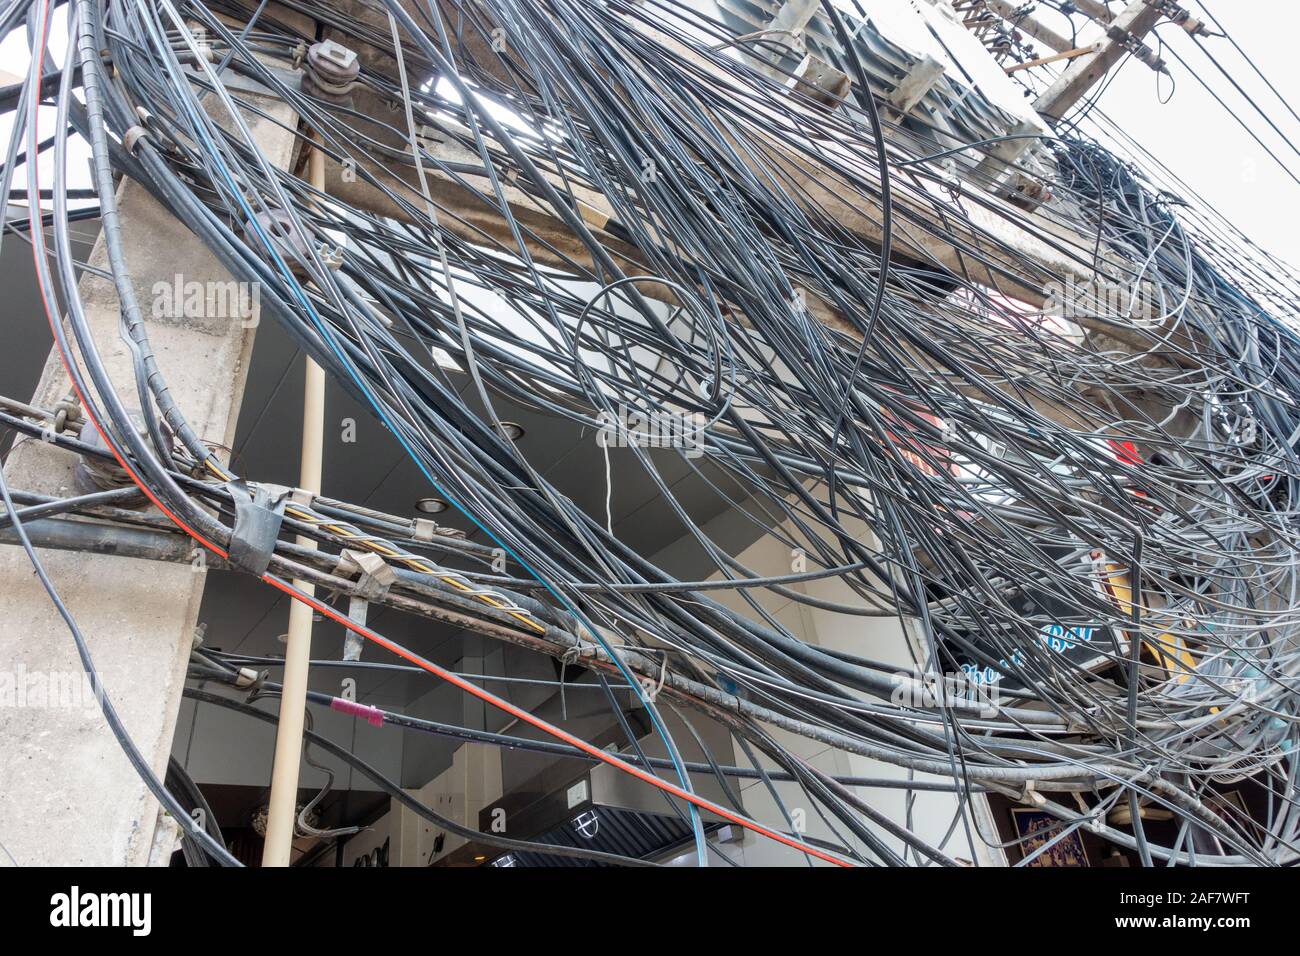 Suministro de electricidad caótica, cientos de cables alrededor de polos Foto de stock